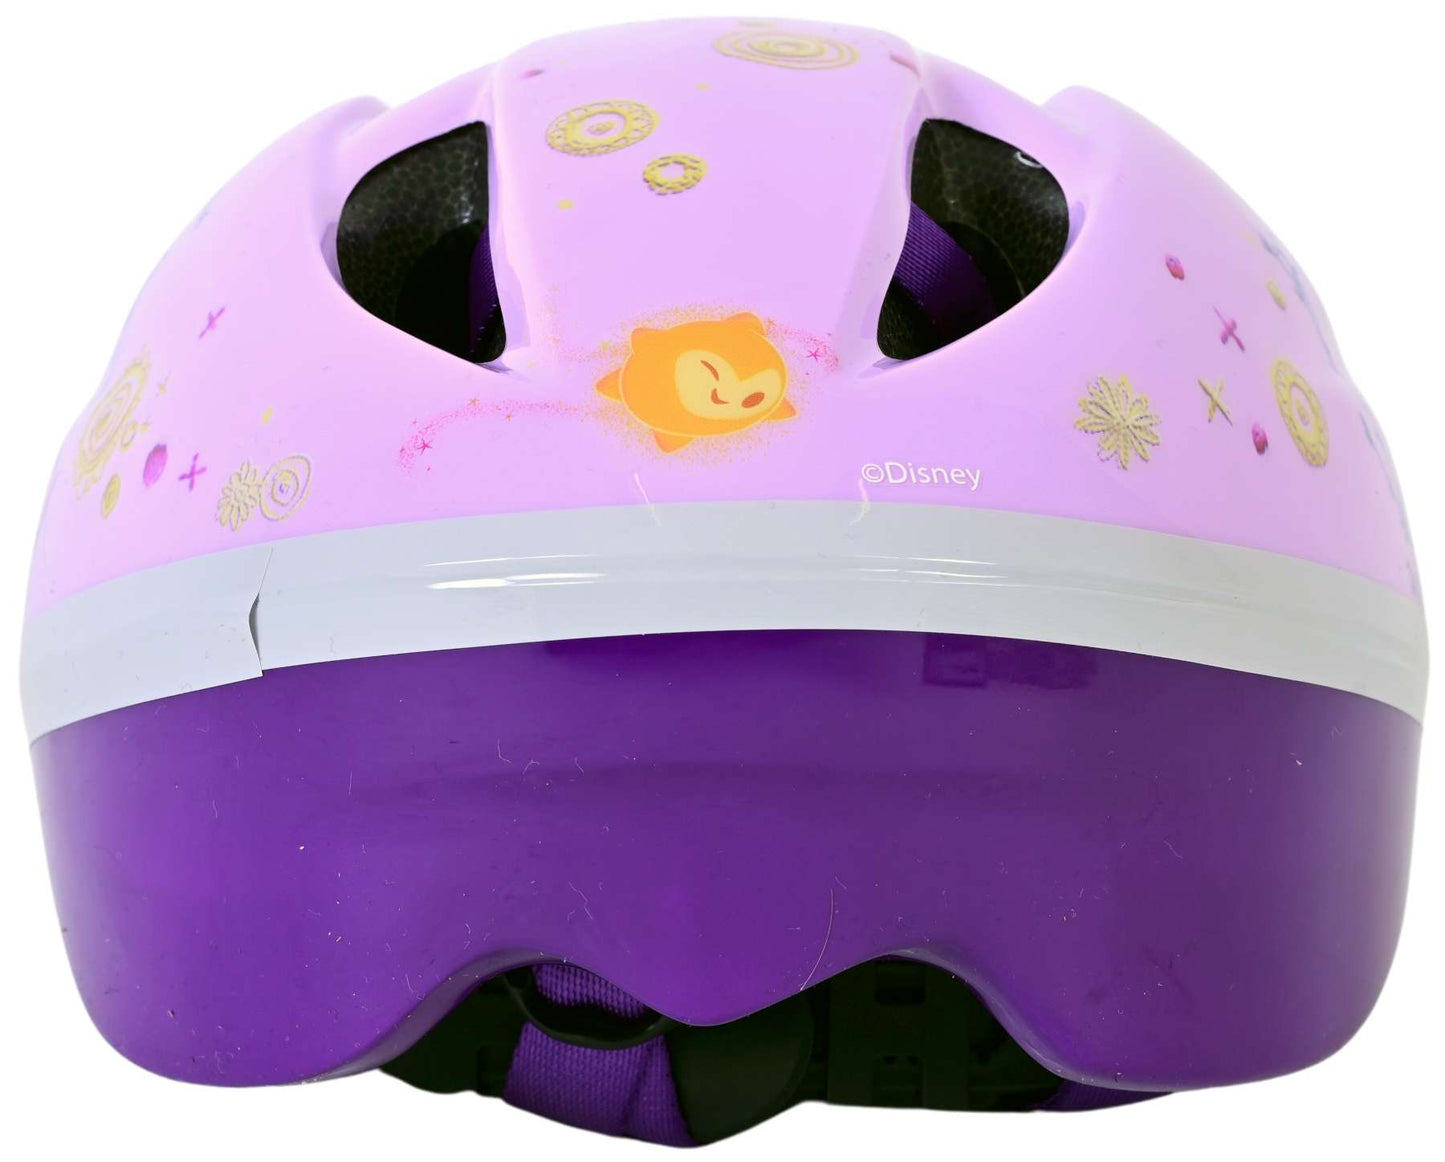 Wish Wish Bicycle Helmet 52-56 cm